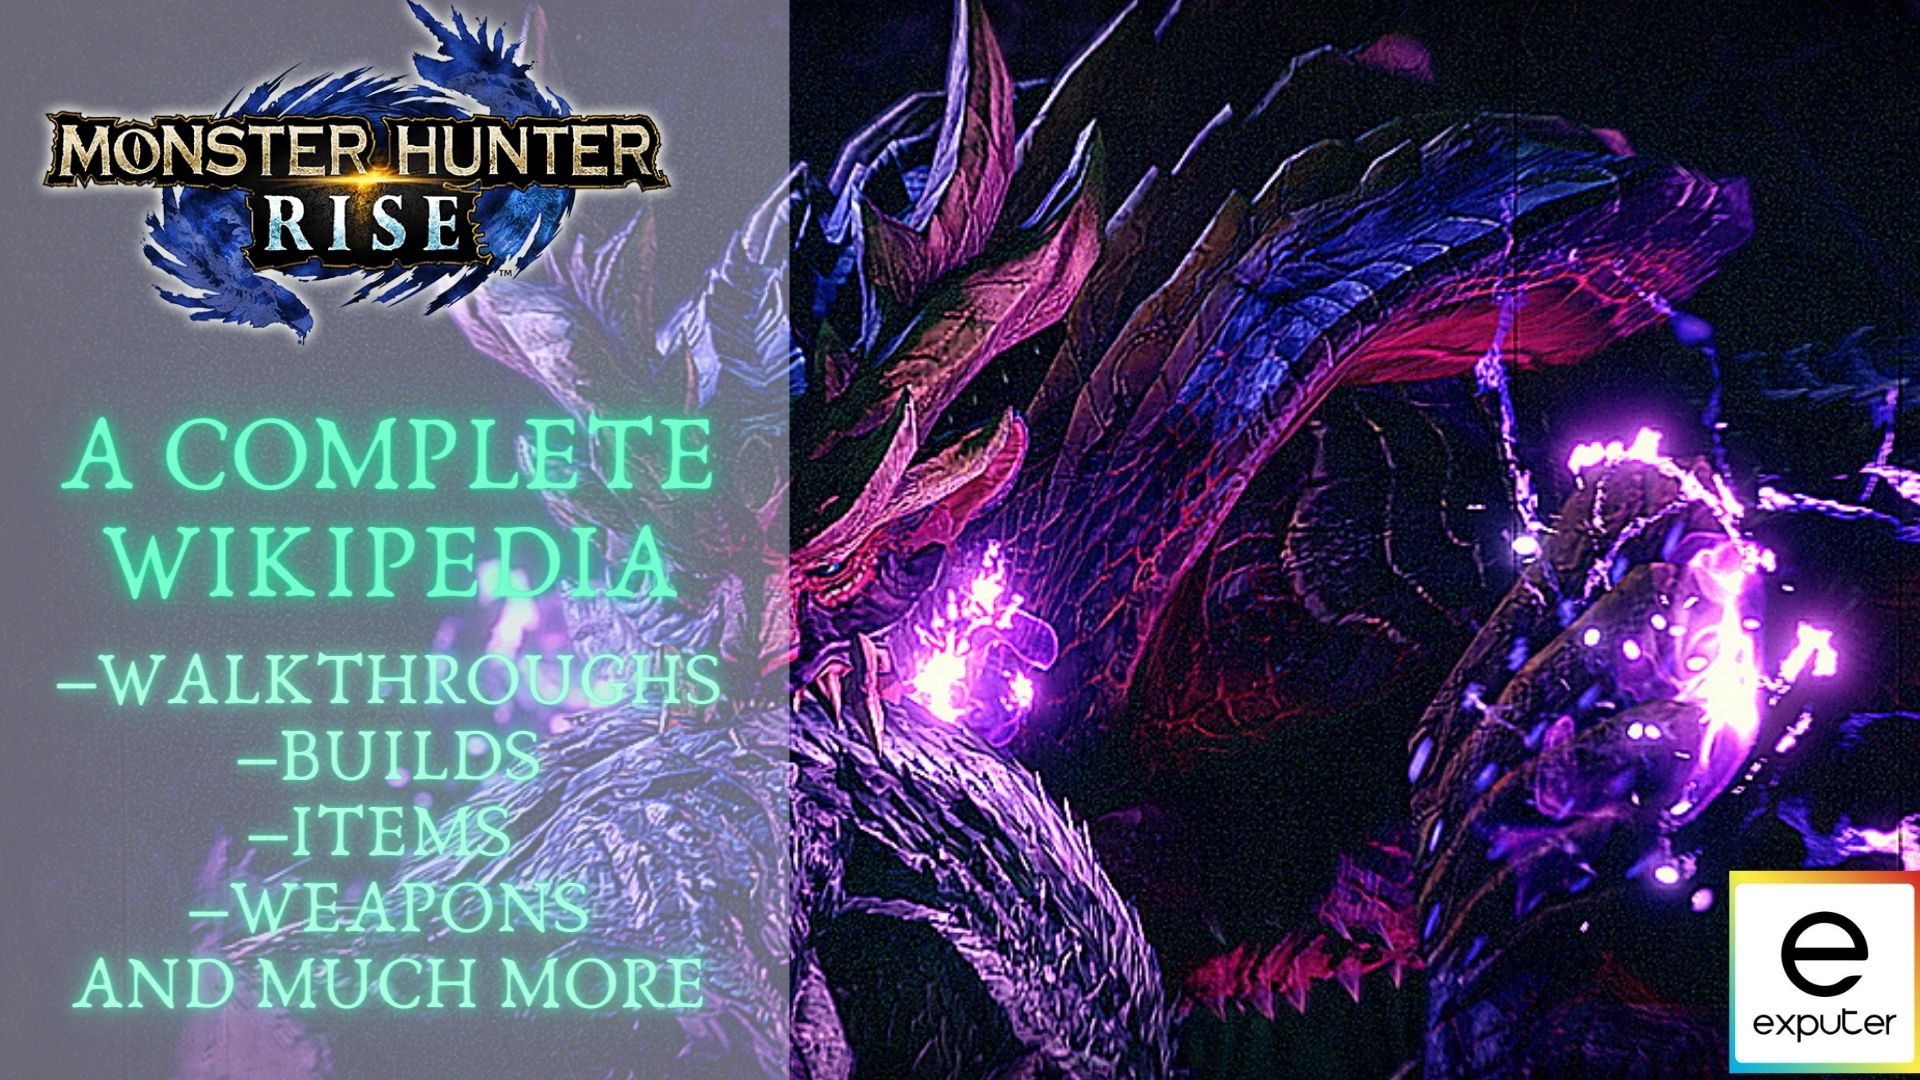 Monster Hunter Rise: Sunbreak, Monster Hunter Wiki